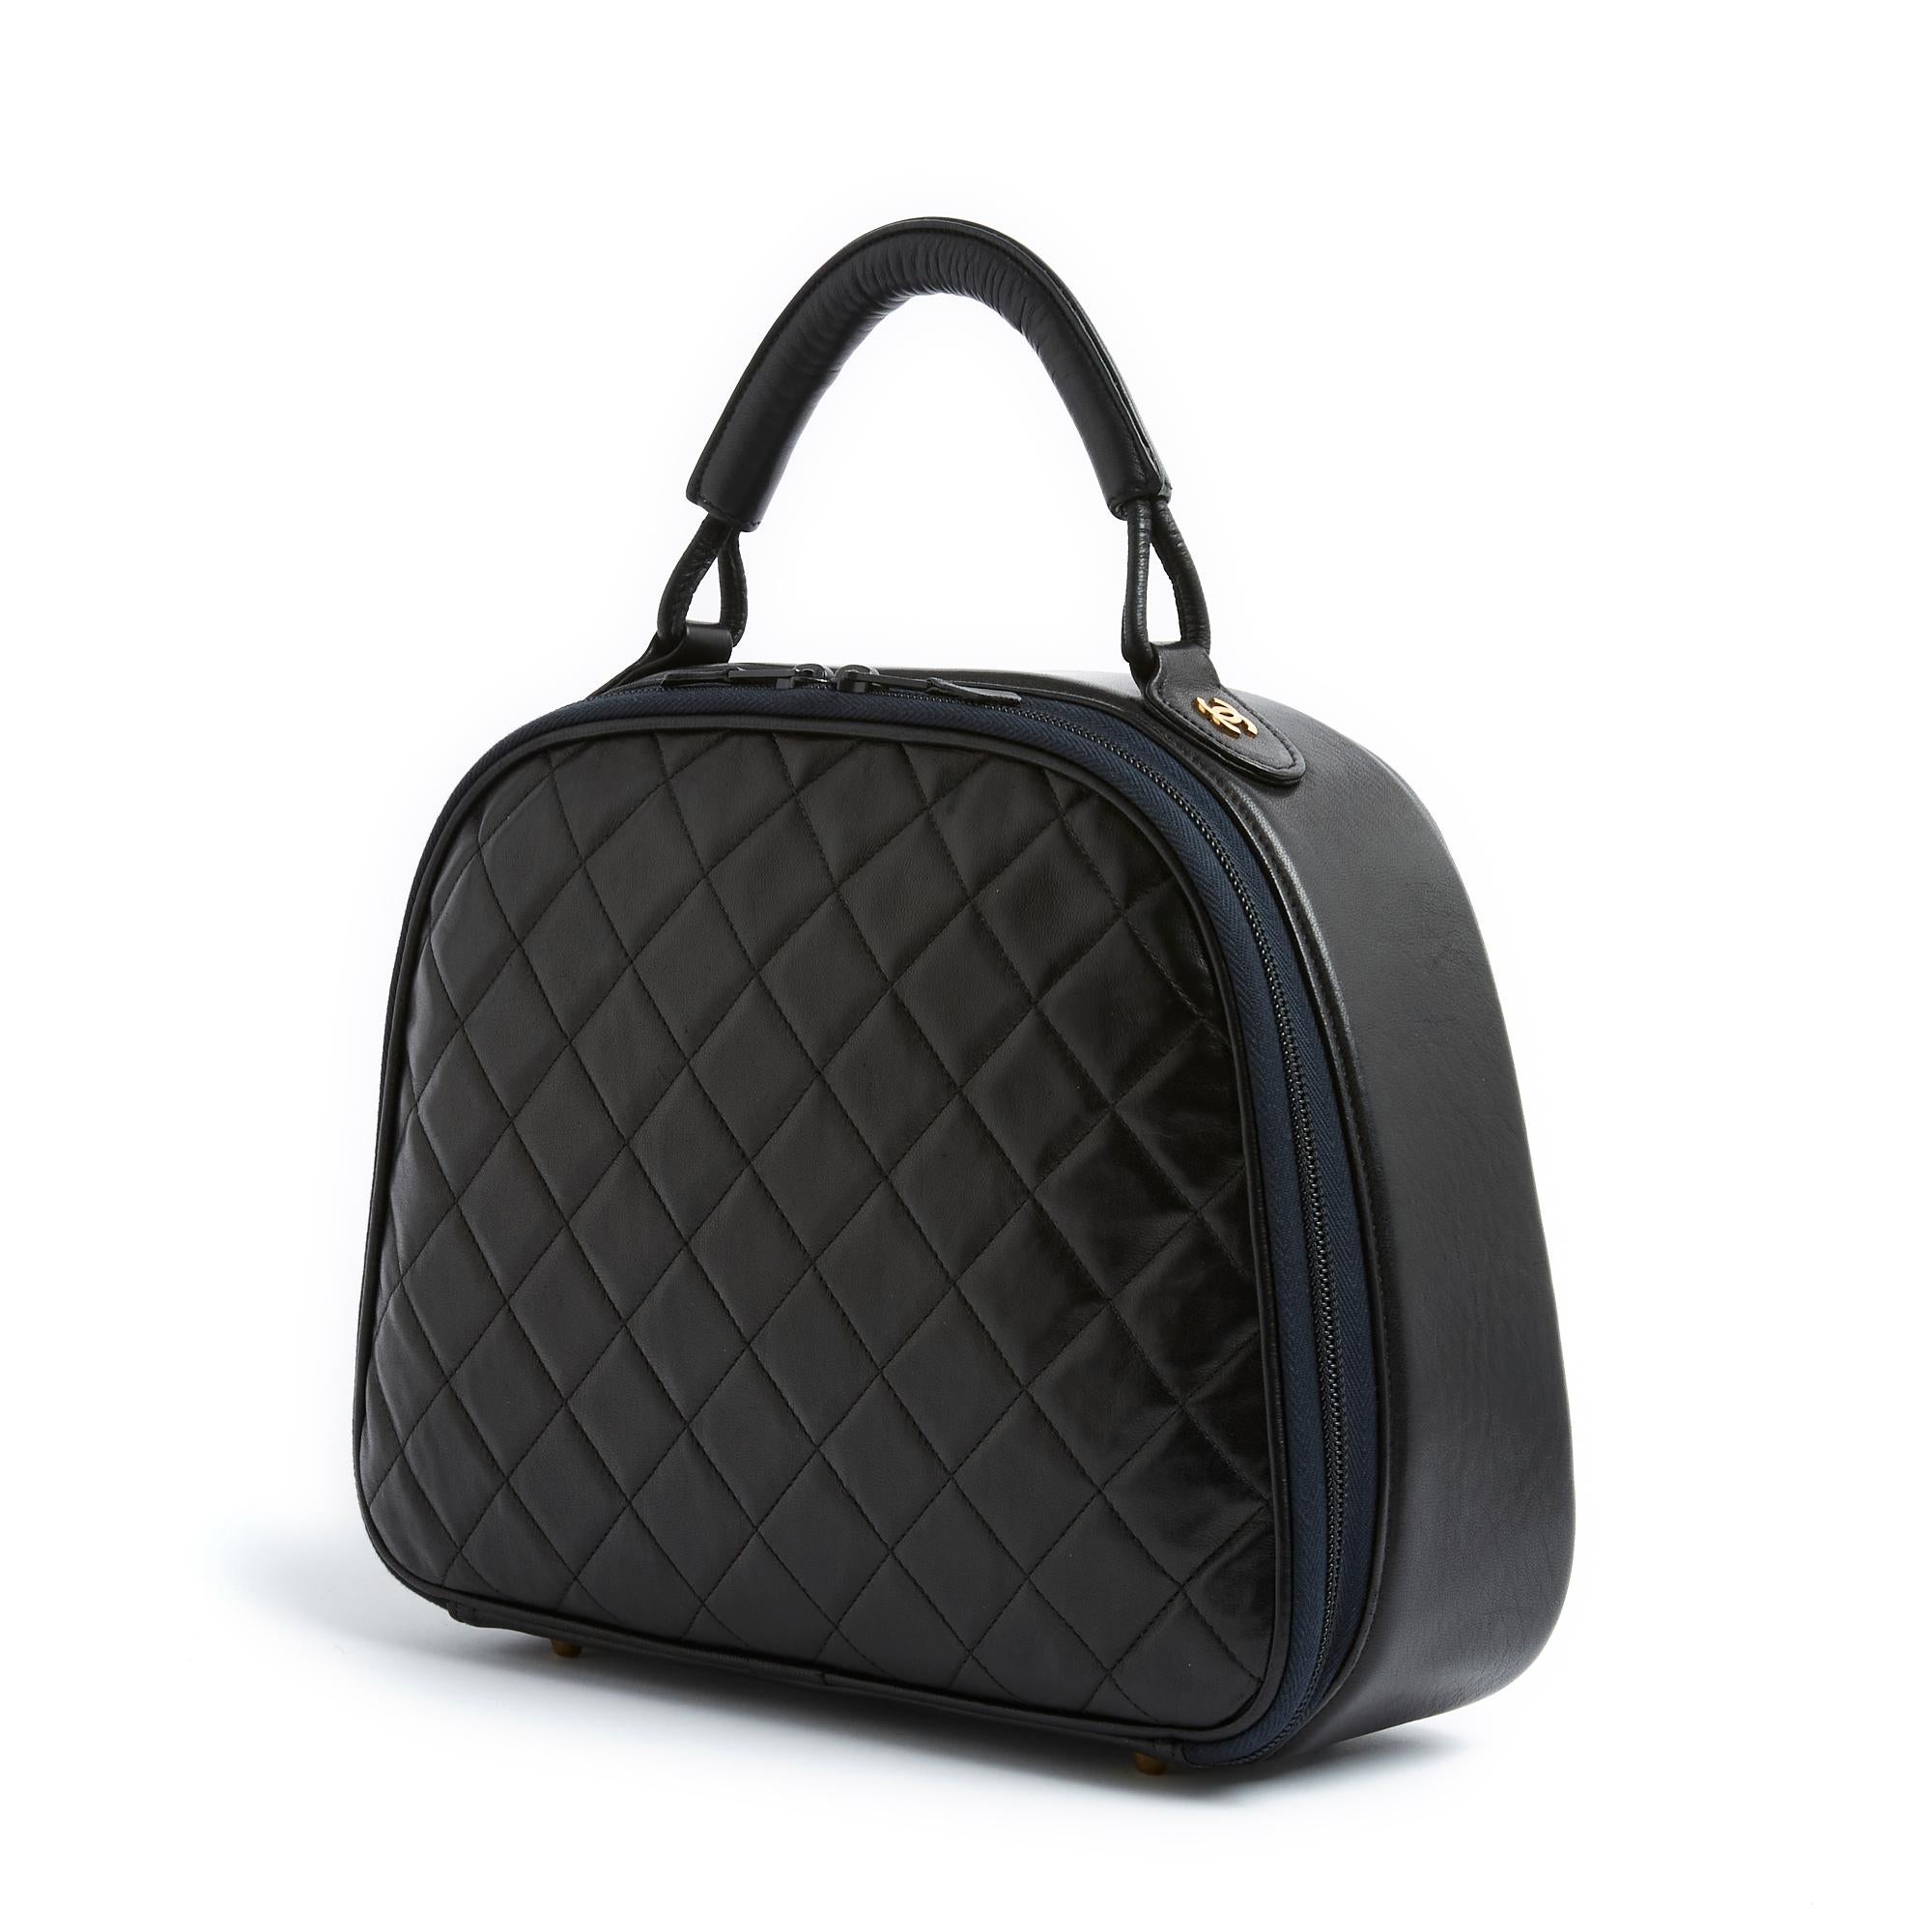 Chanel Kosmetiktasche der Serie Classic oder Timeless aus gestepptem schwarzem Leder, Innenausstattung aus bordeauxfarbenem Vinyl, signiert Chanel, mit einer Reißverschlusstasche und zwei aufgesetzten Taschen, Doppelschieber-Reißverschluss, oberer